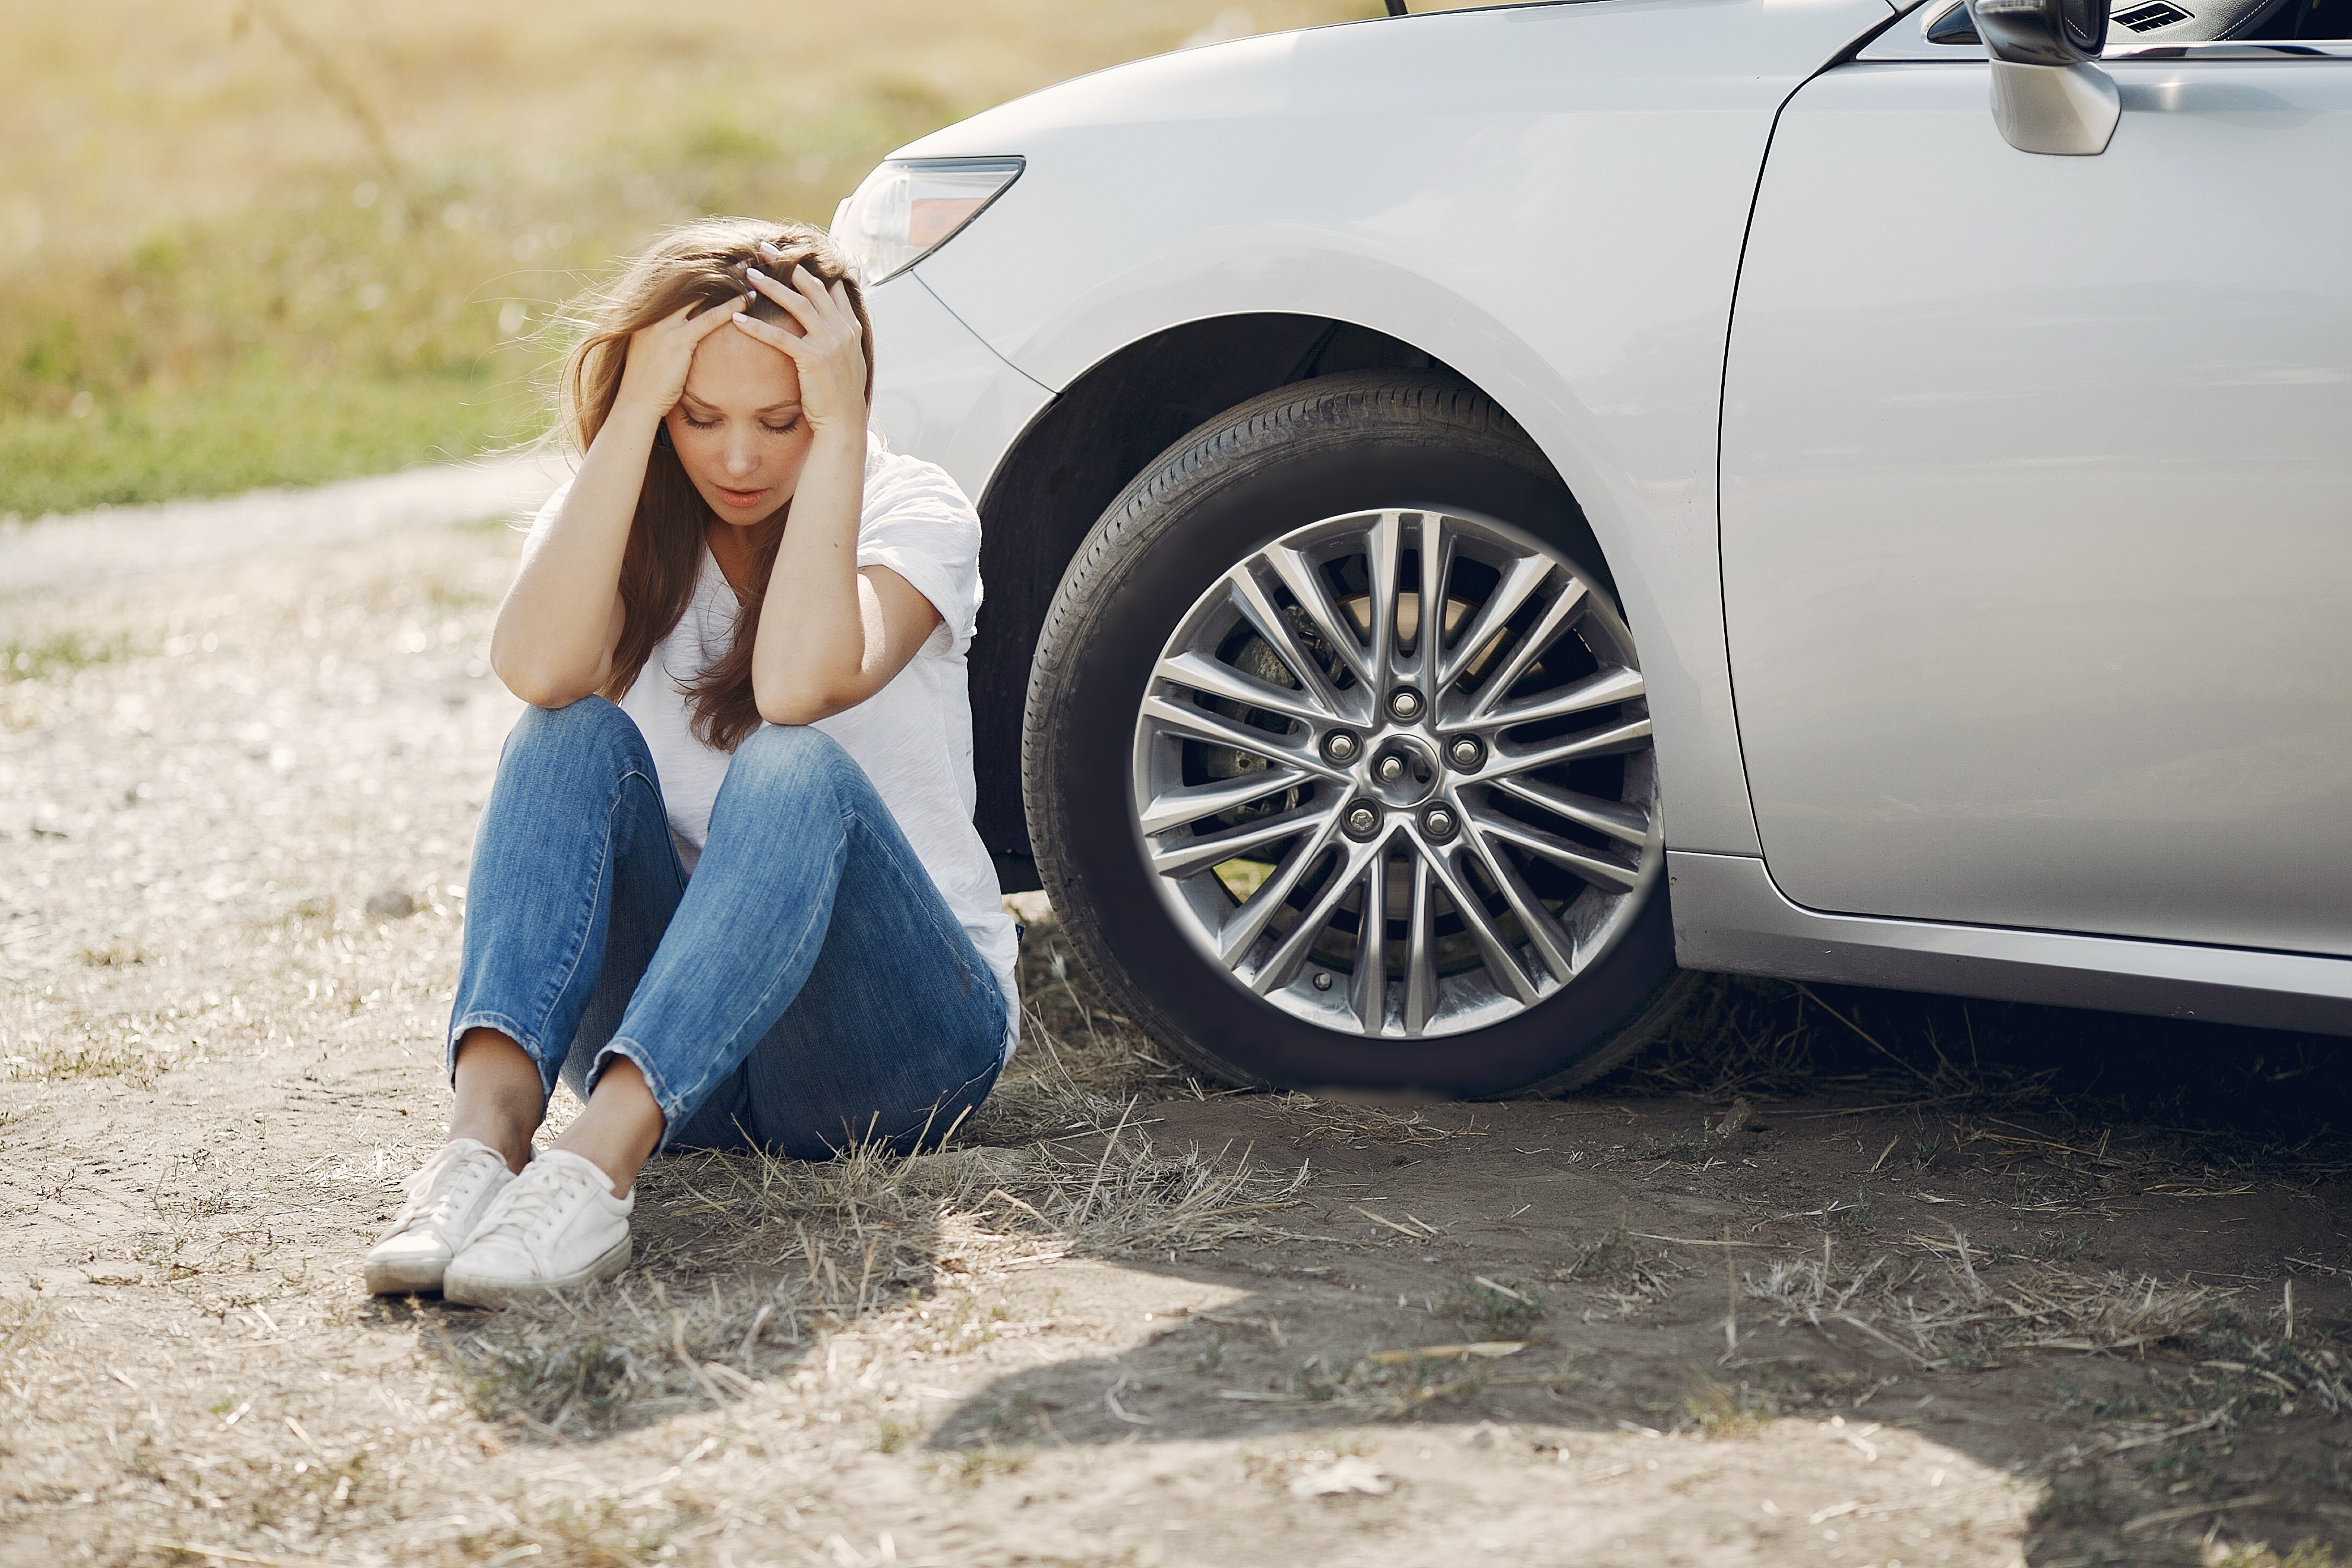 Choisir de bons pneus est essentiel pour la tenue de route de ta  voiture. Leur état doit être irréprochable et la pression doit être contrôlée fréquemment. C\'est quand elle sort de la route que tu réalises que ton véhicule méritait d\'être aussi bien chaussée que toi. La profondeur des rainures de tes pneus sont beaucoup plus vitales que celle de tes baskets.  